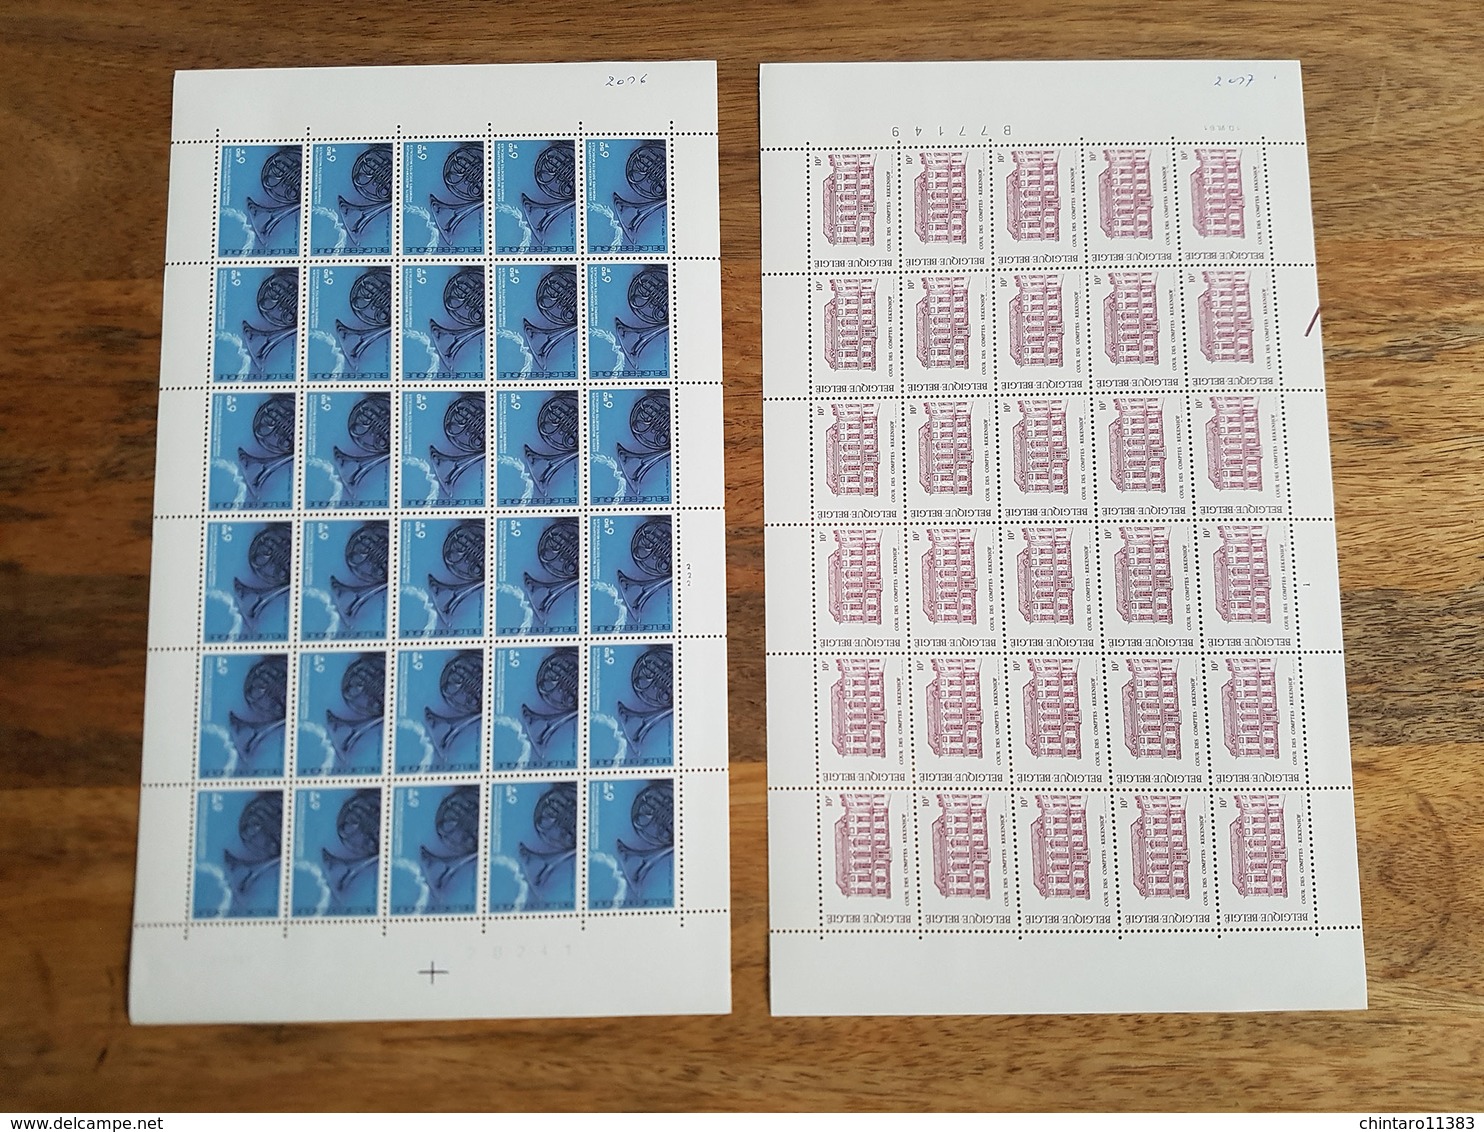 Lot feuilles complètes/incomplètes de timbres Belgique - Année 1981